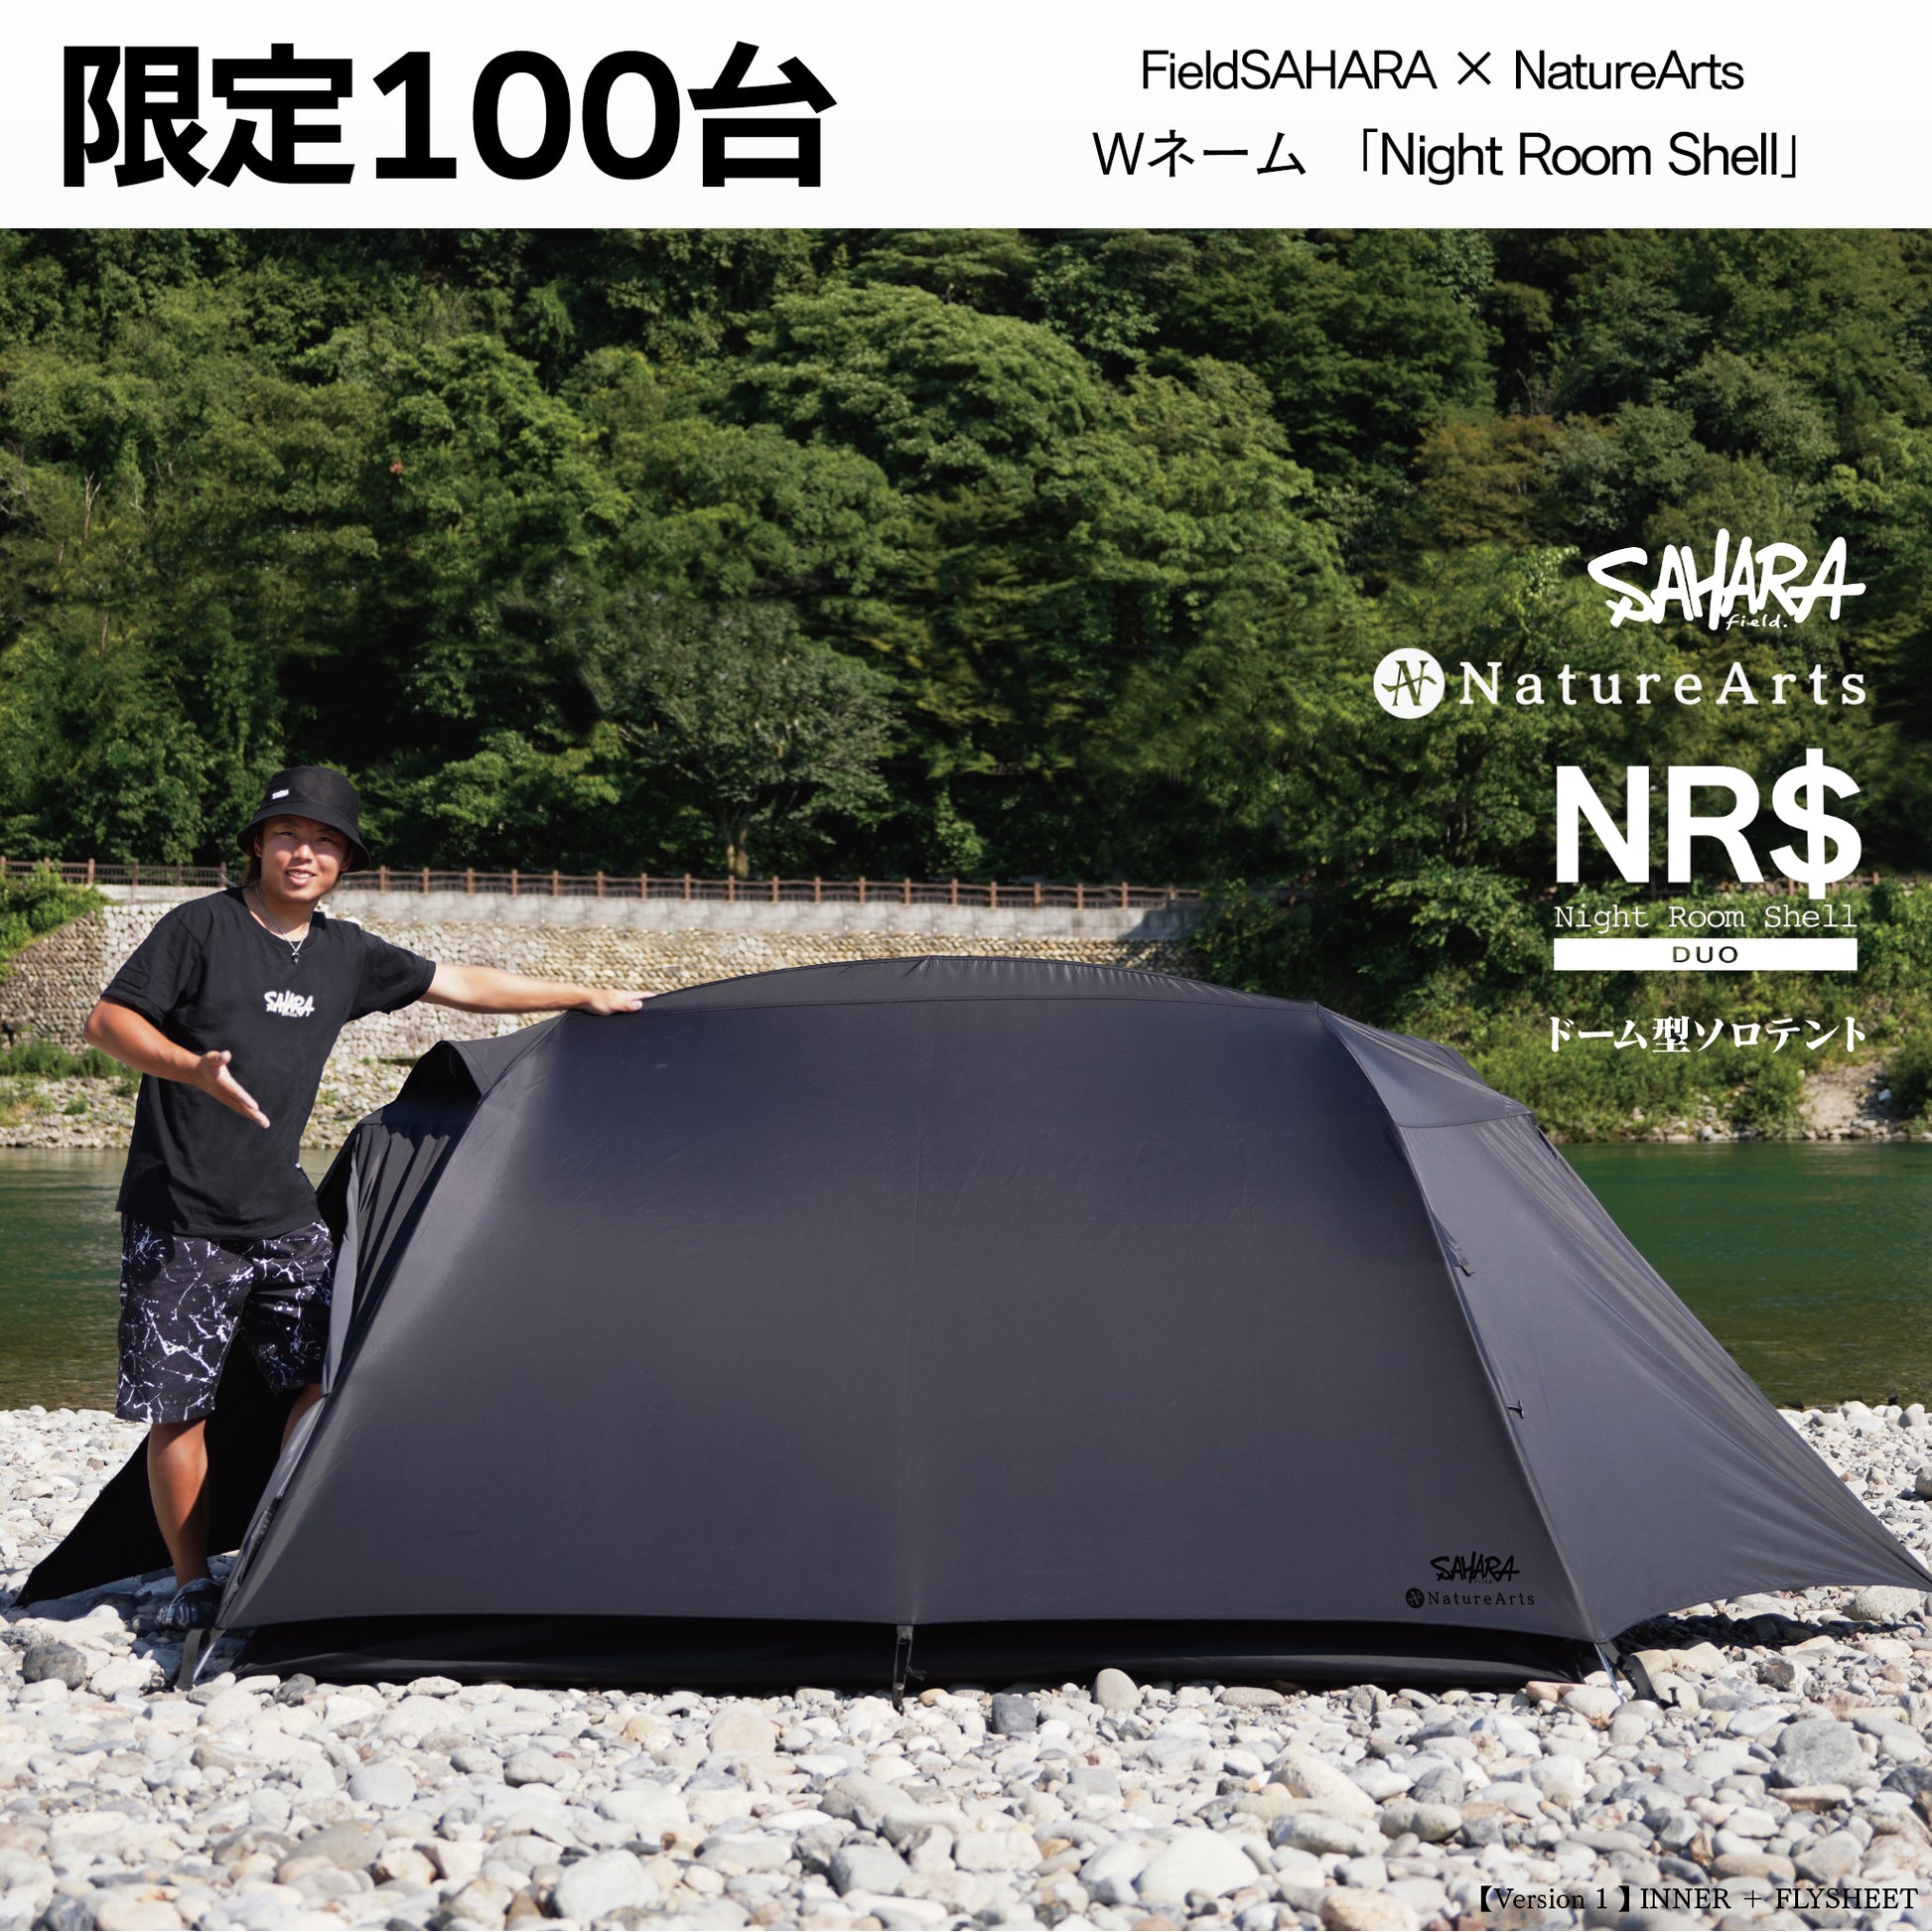 FieldSAHARA × NatureArts Night Room Shell Duoドーム型ソロテント 限定100台 受注販売 - FieldSAHARA